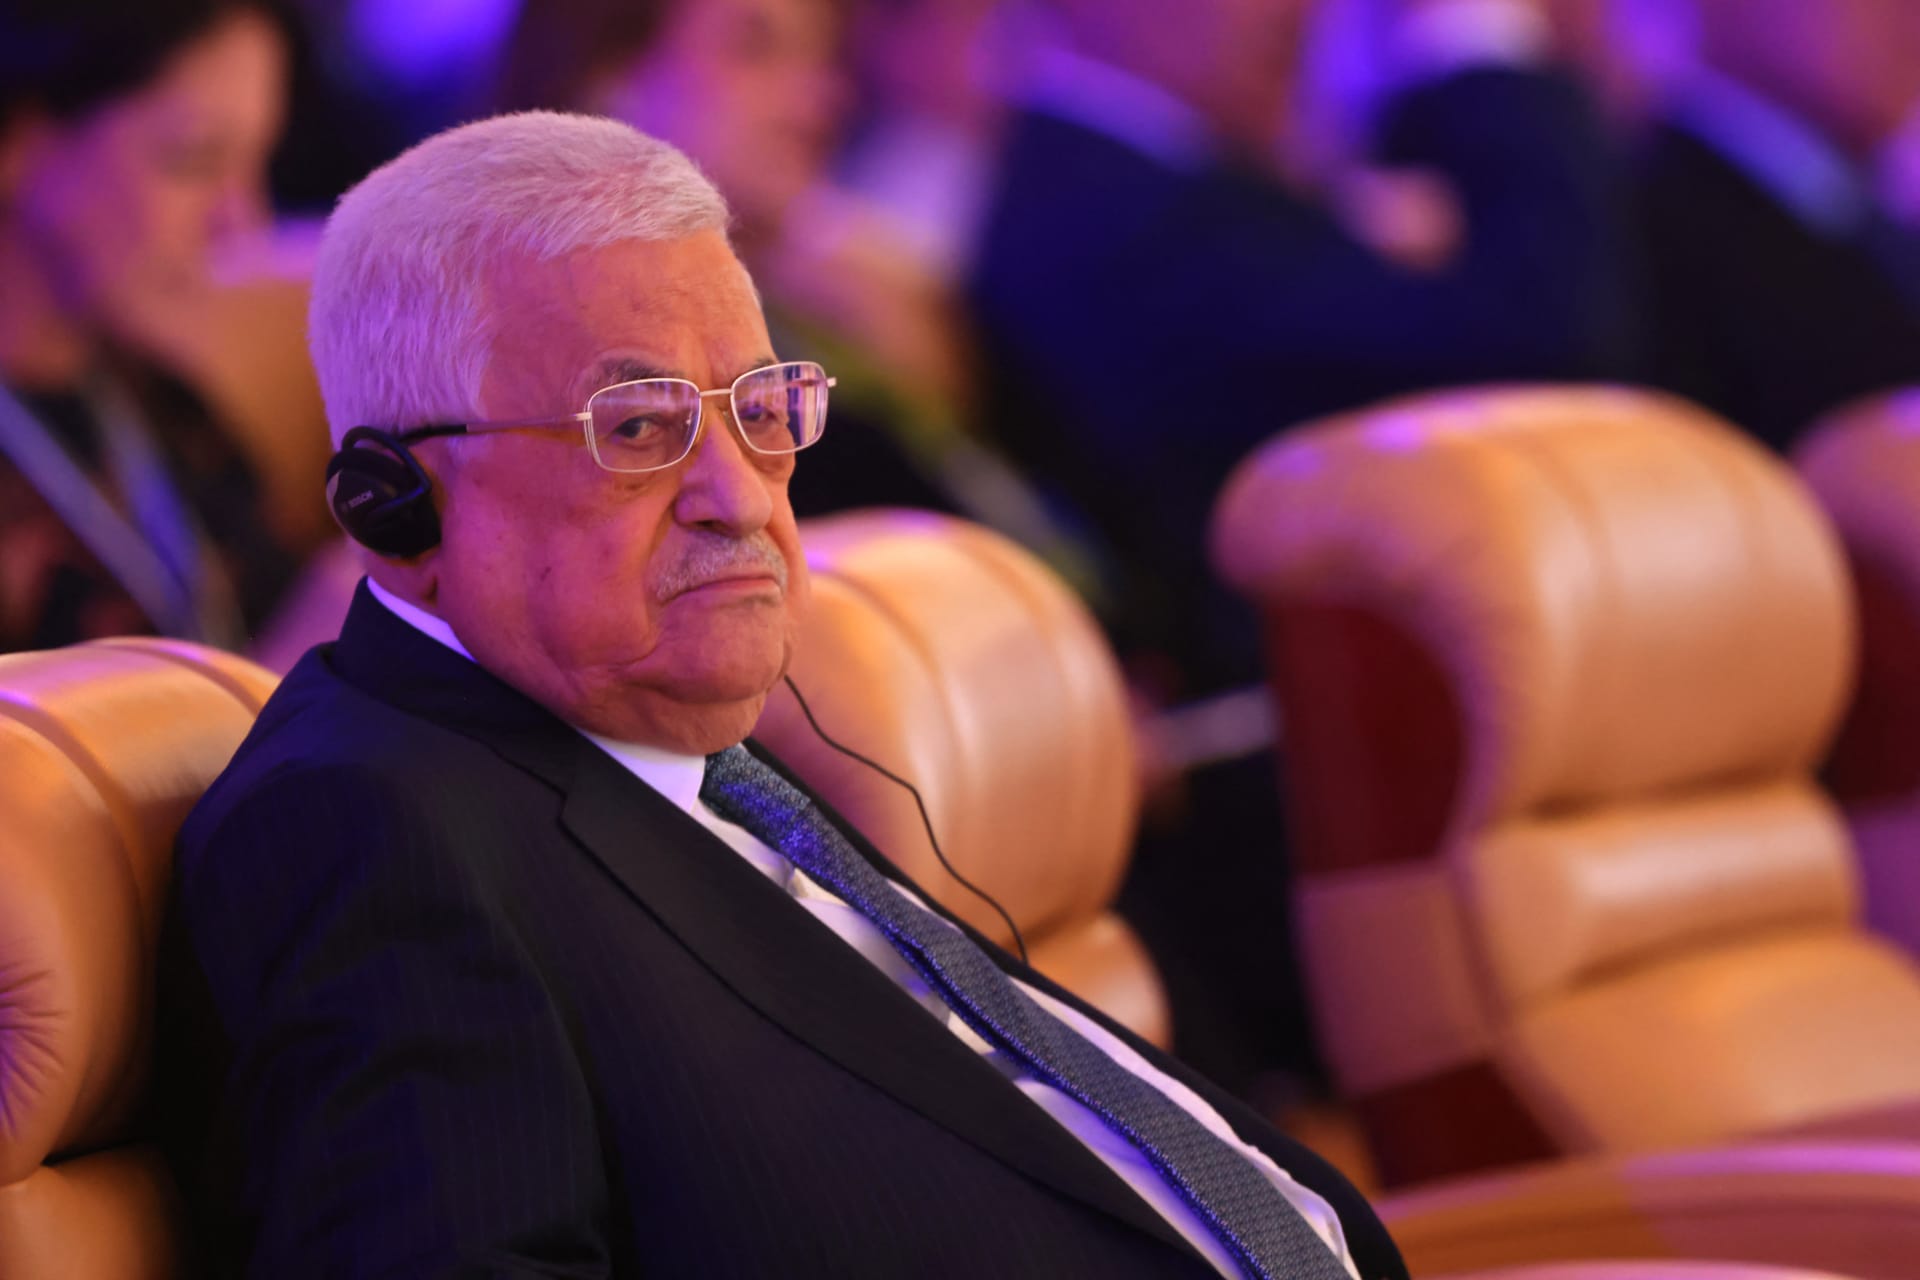 جدل على تصريح محمود عباس حول "هجمات 7 أكتوبر" وانتقاده "القرار الانفرادي" من حماس